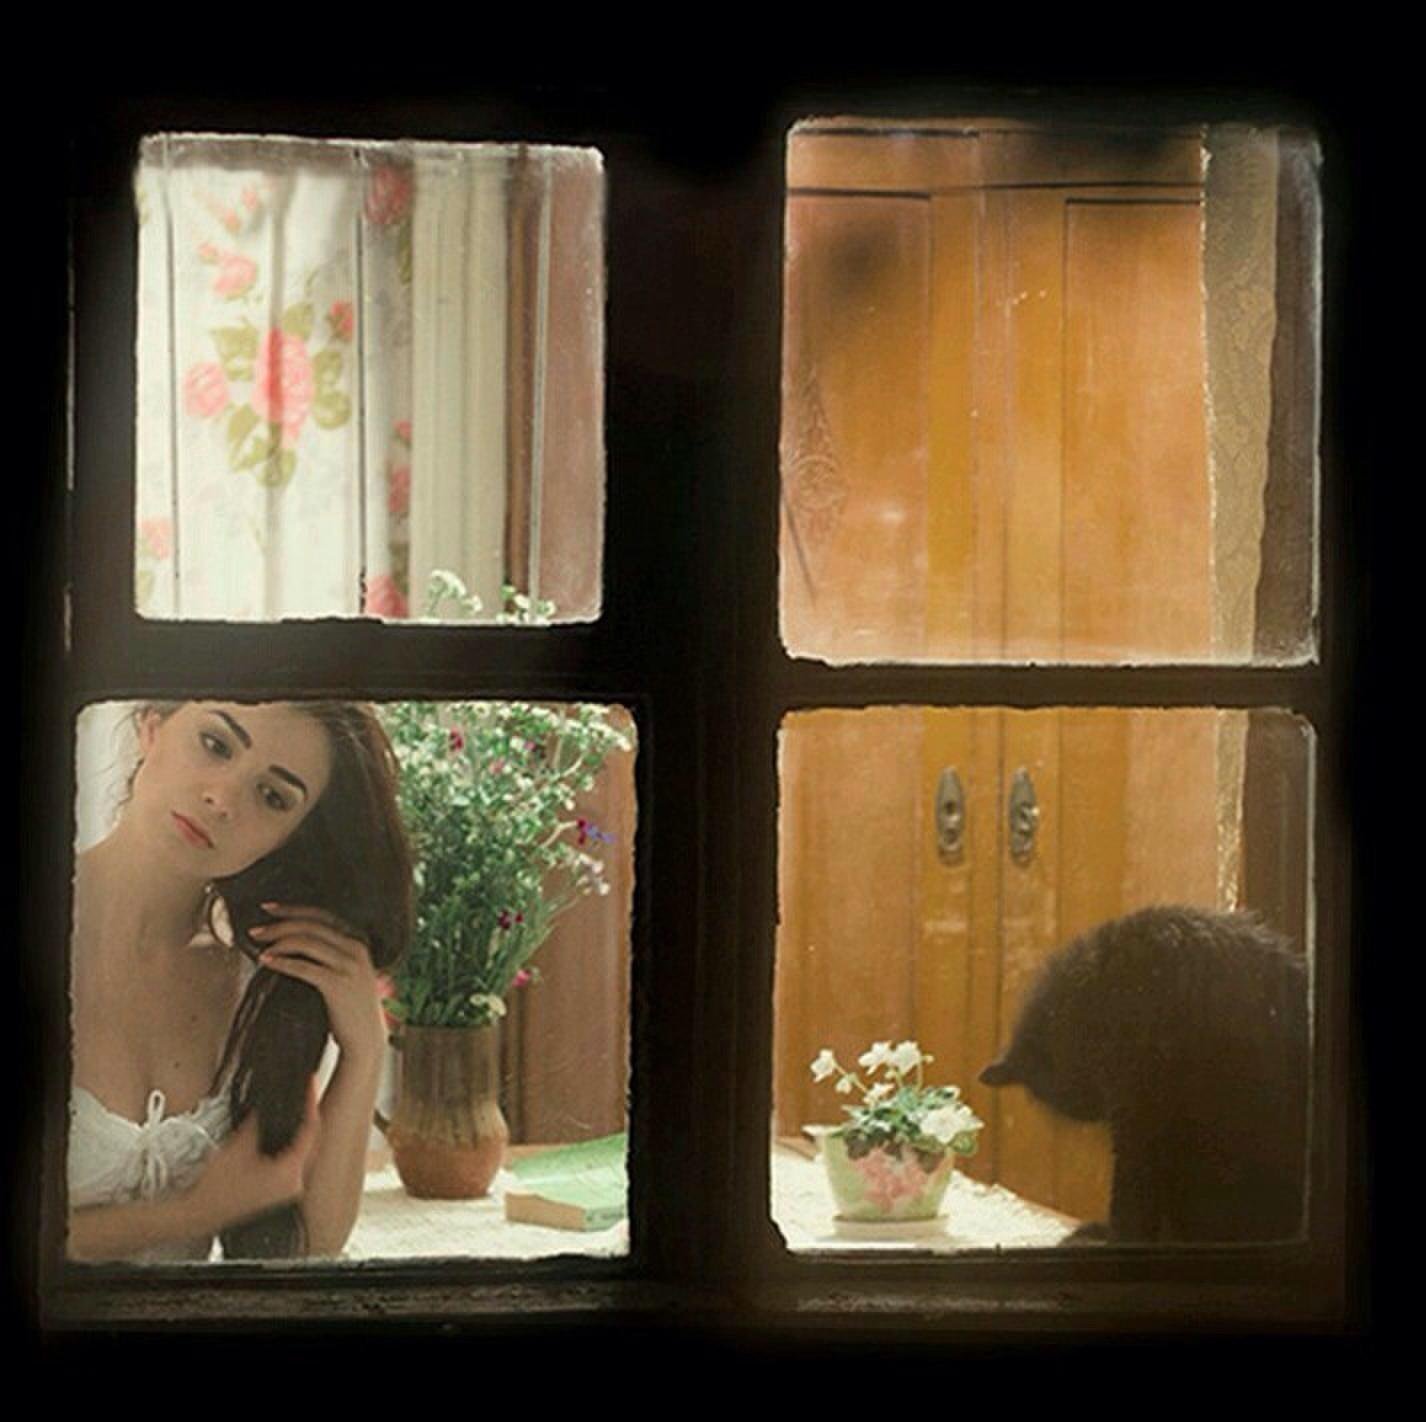 Посмотри в окно найди. Заглядывает в окно. Заглядывать в чужие окна. Загляни в окно. Женщина заглядывает в окно.